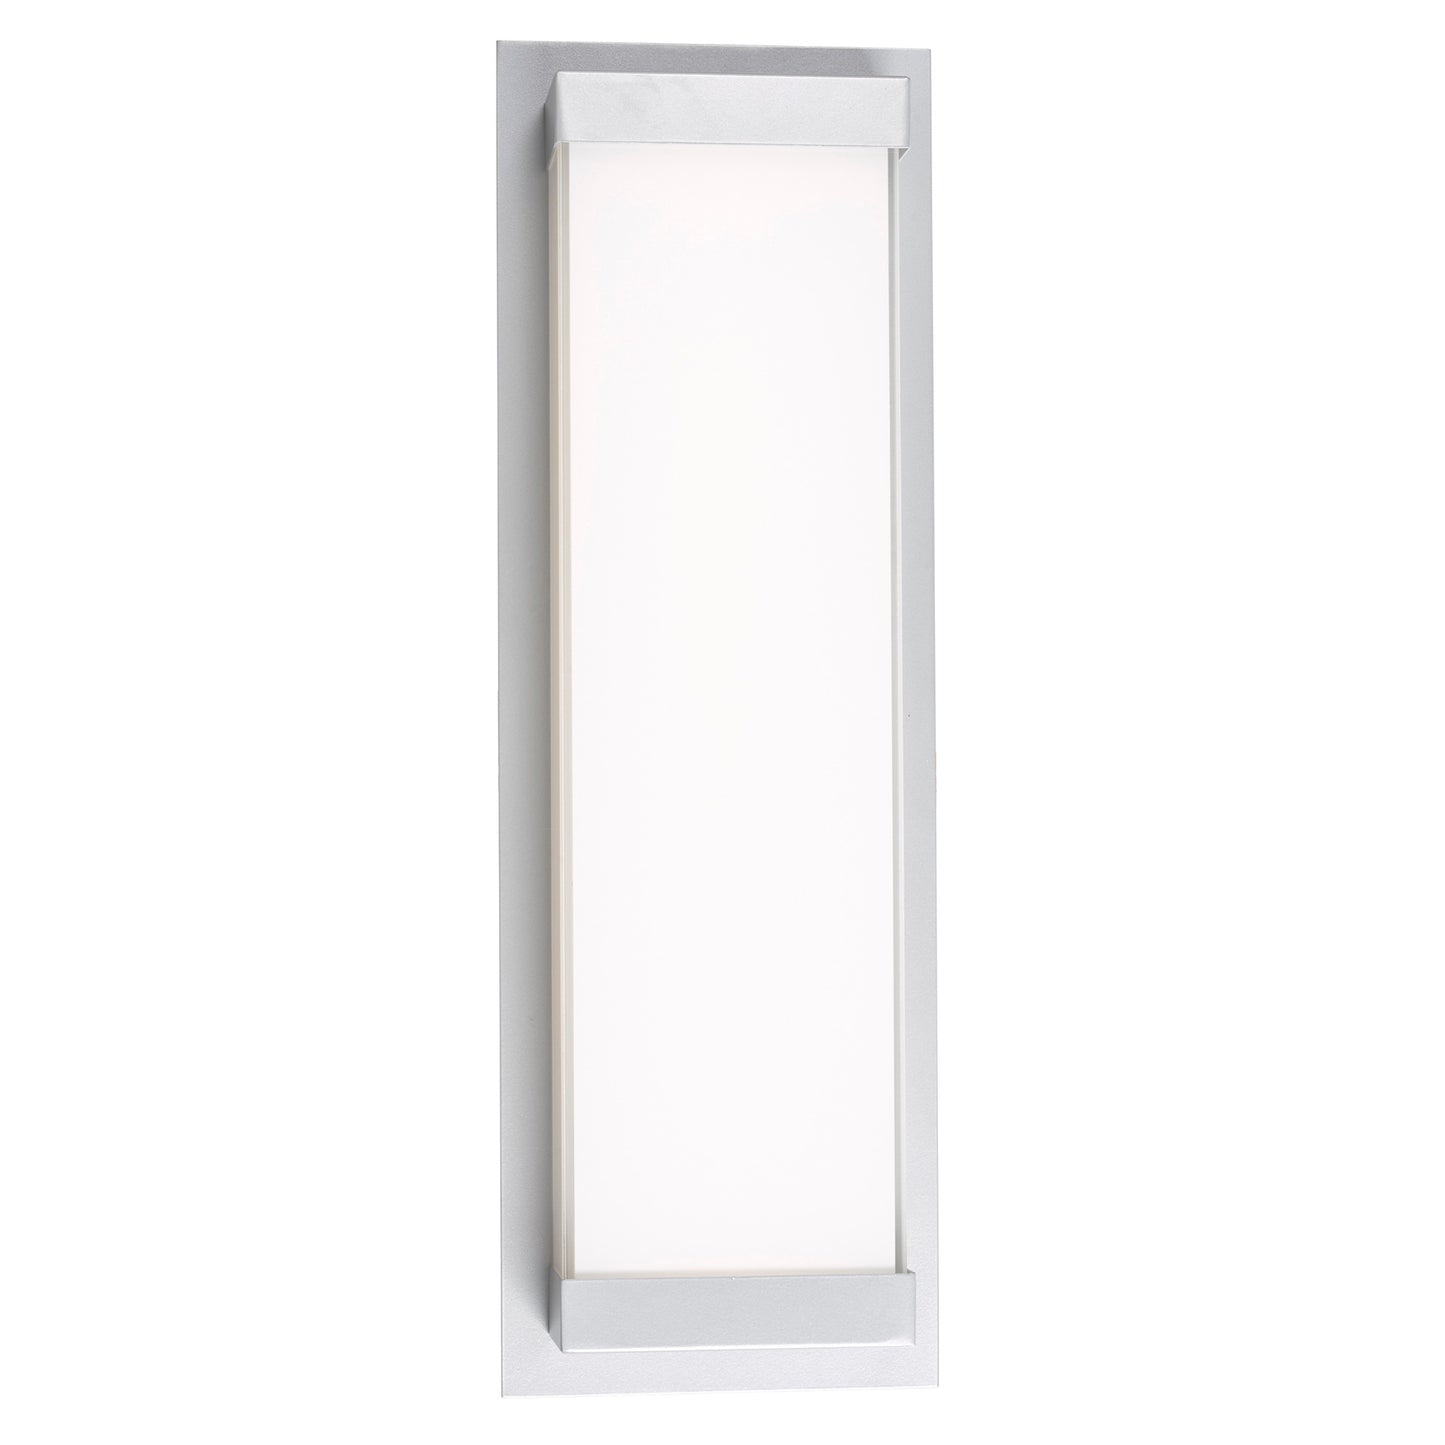 Modern | Tall Panel Wall Light